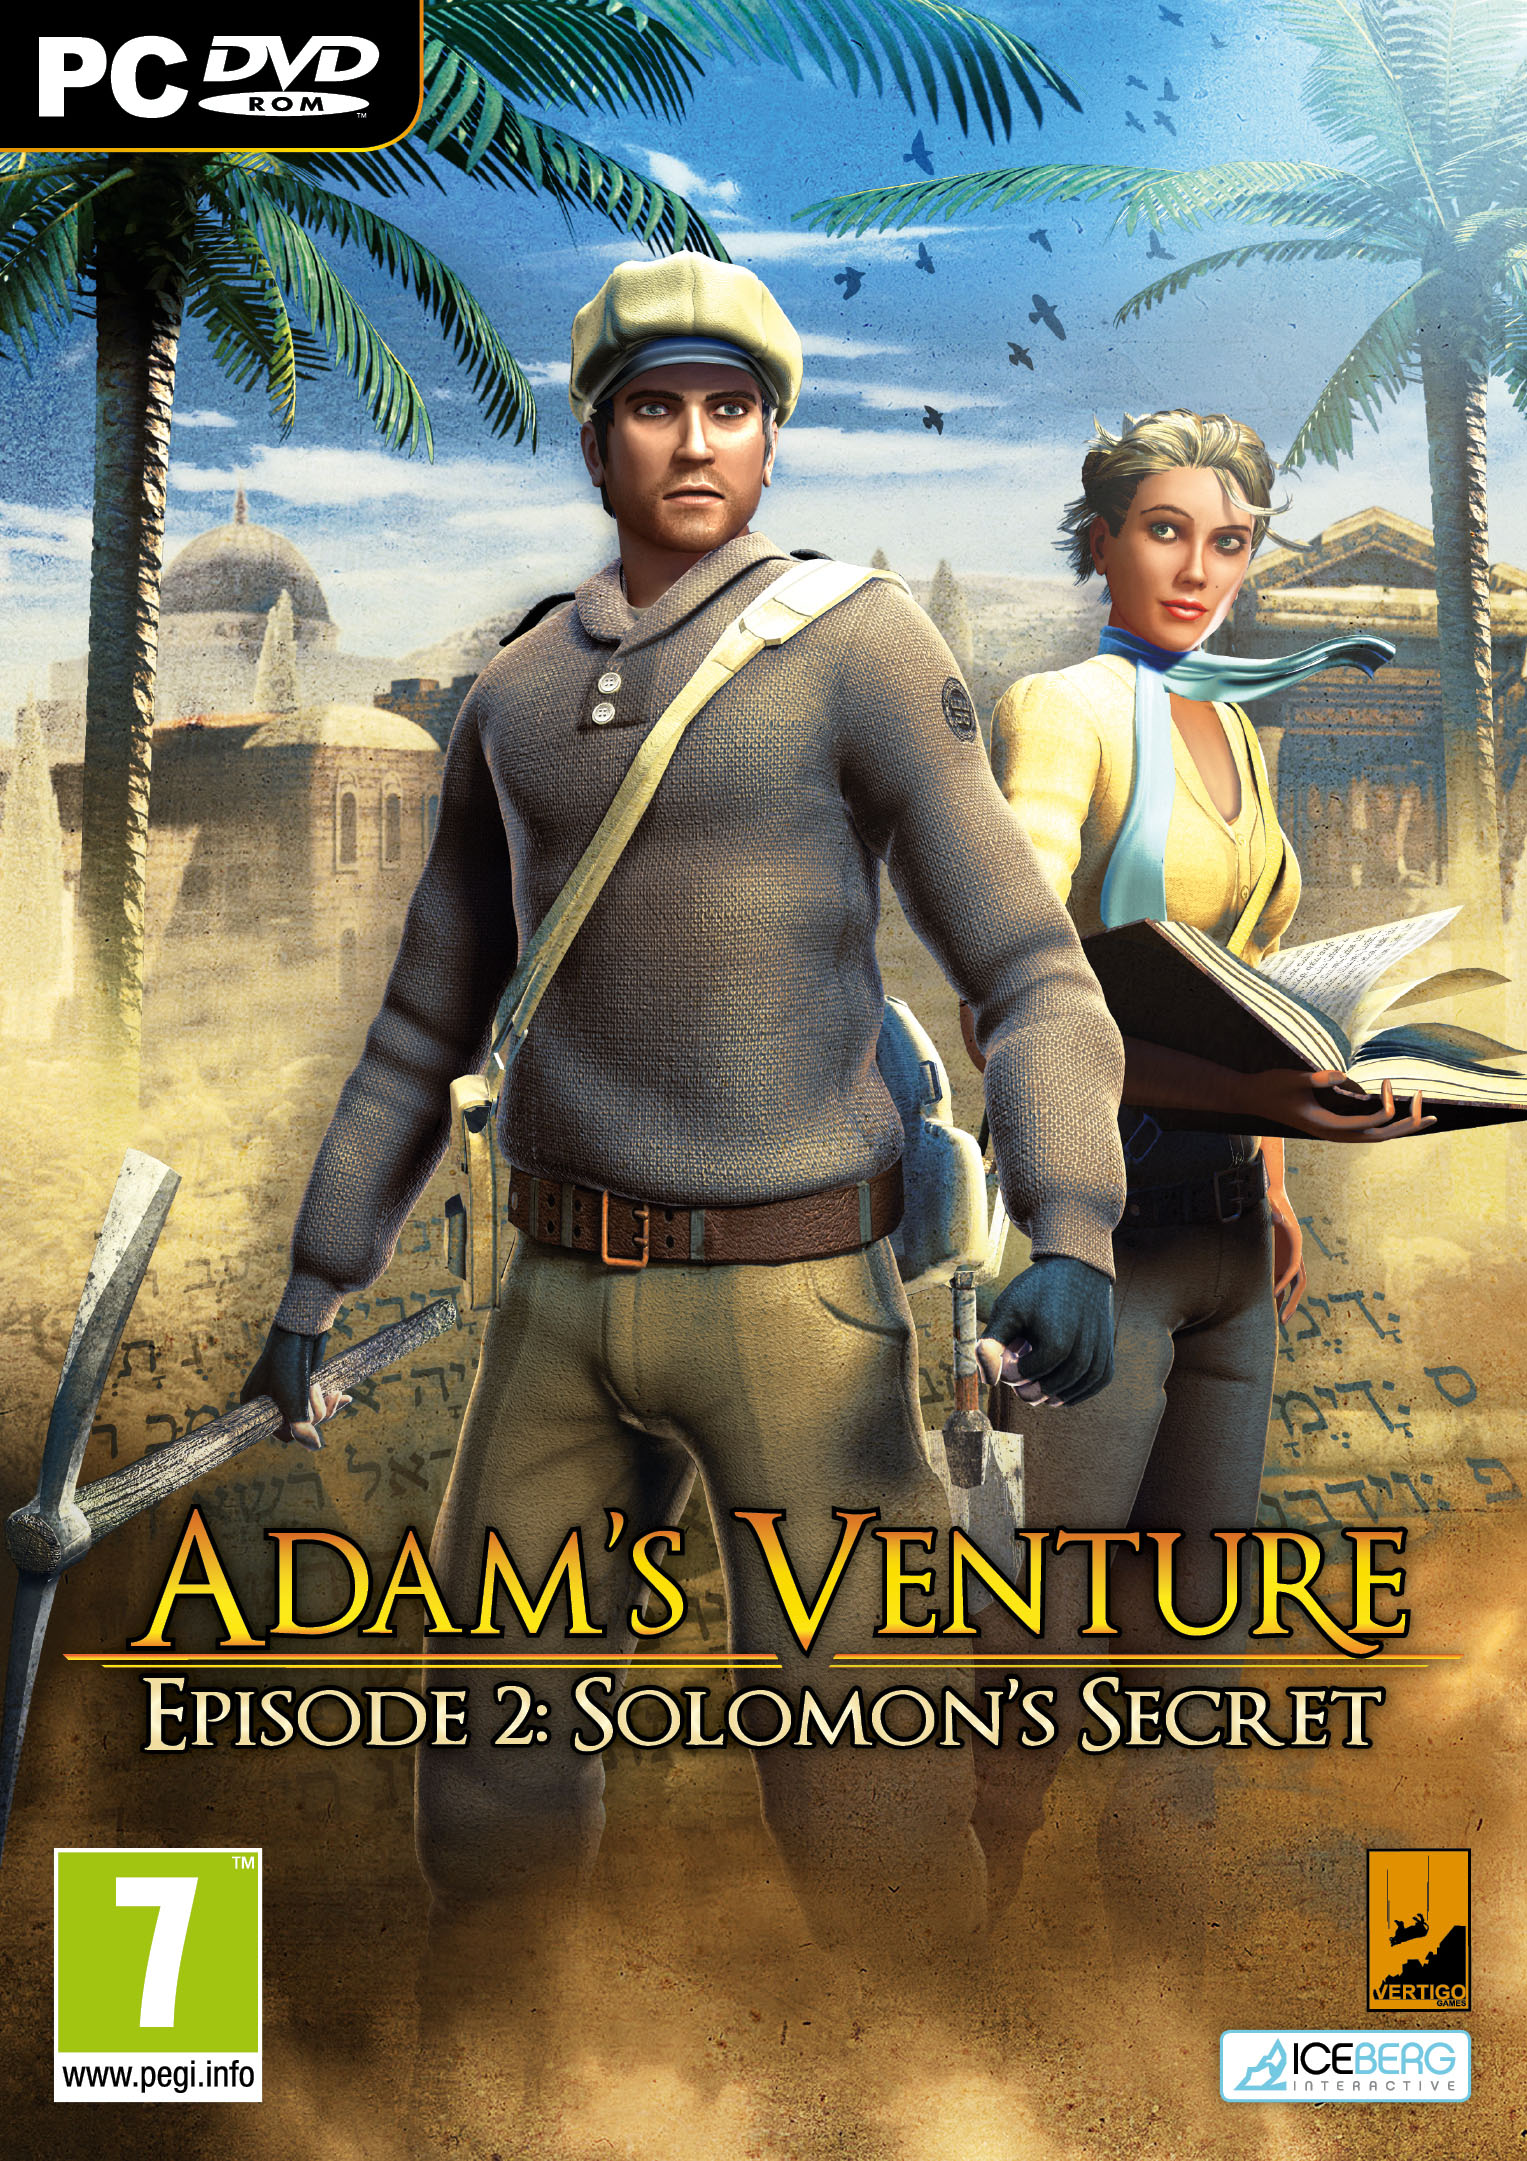 Adam's Venture Episode 2